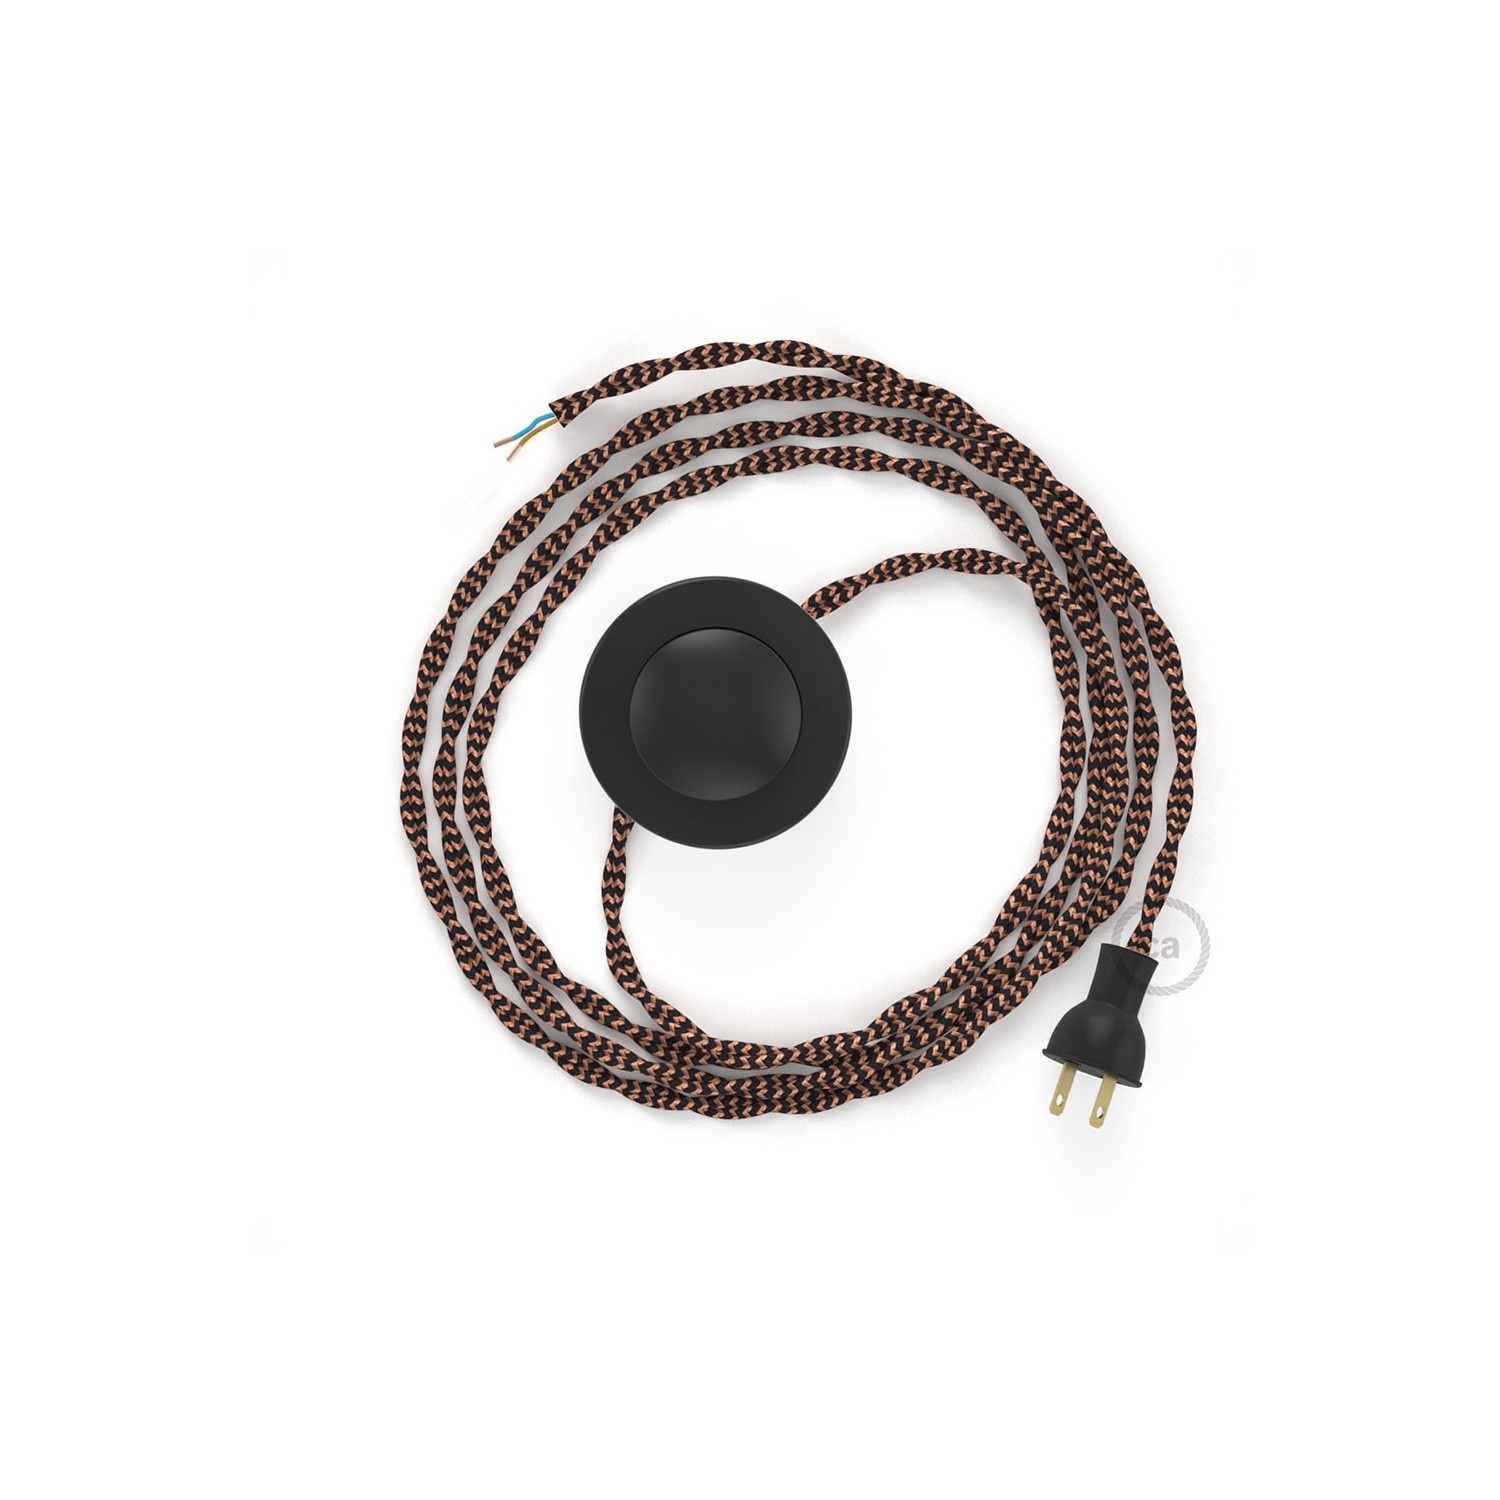 Cableado para lámpara de piso, cable TZ22 Rayón Negro y Whisky 3 m. Elige tu el color de la clavija y del interruptor!